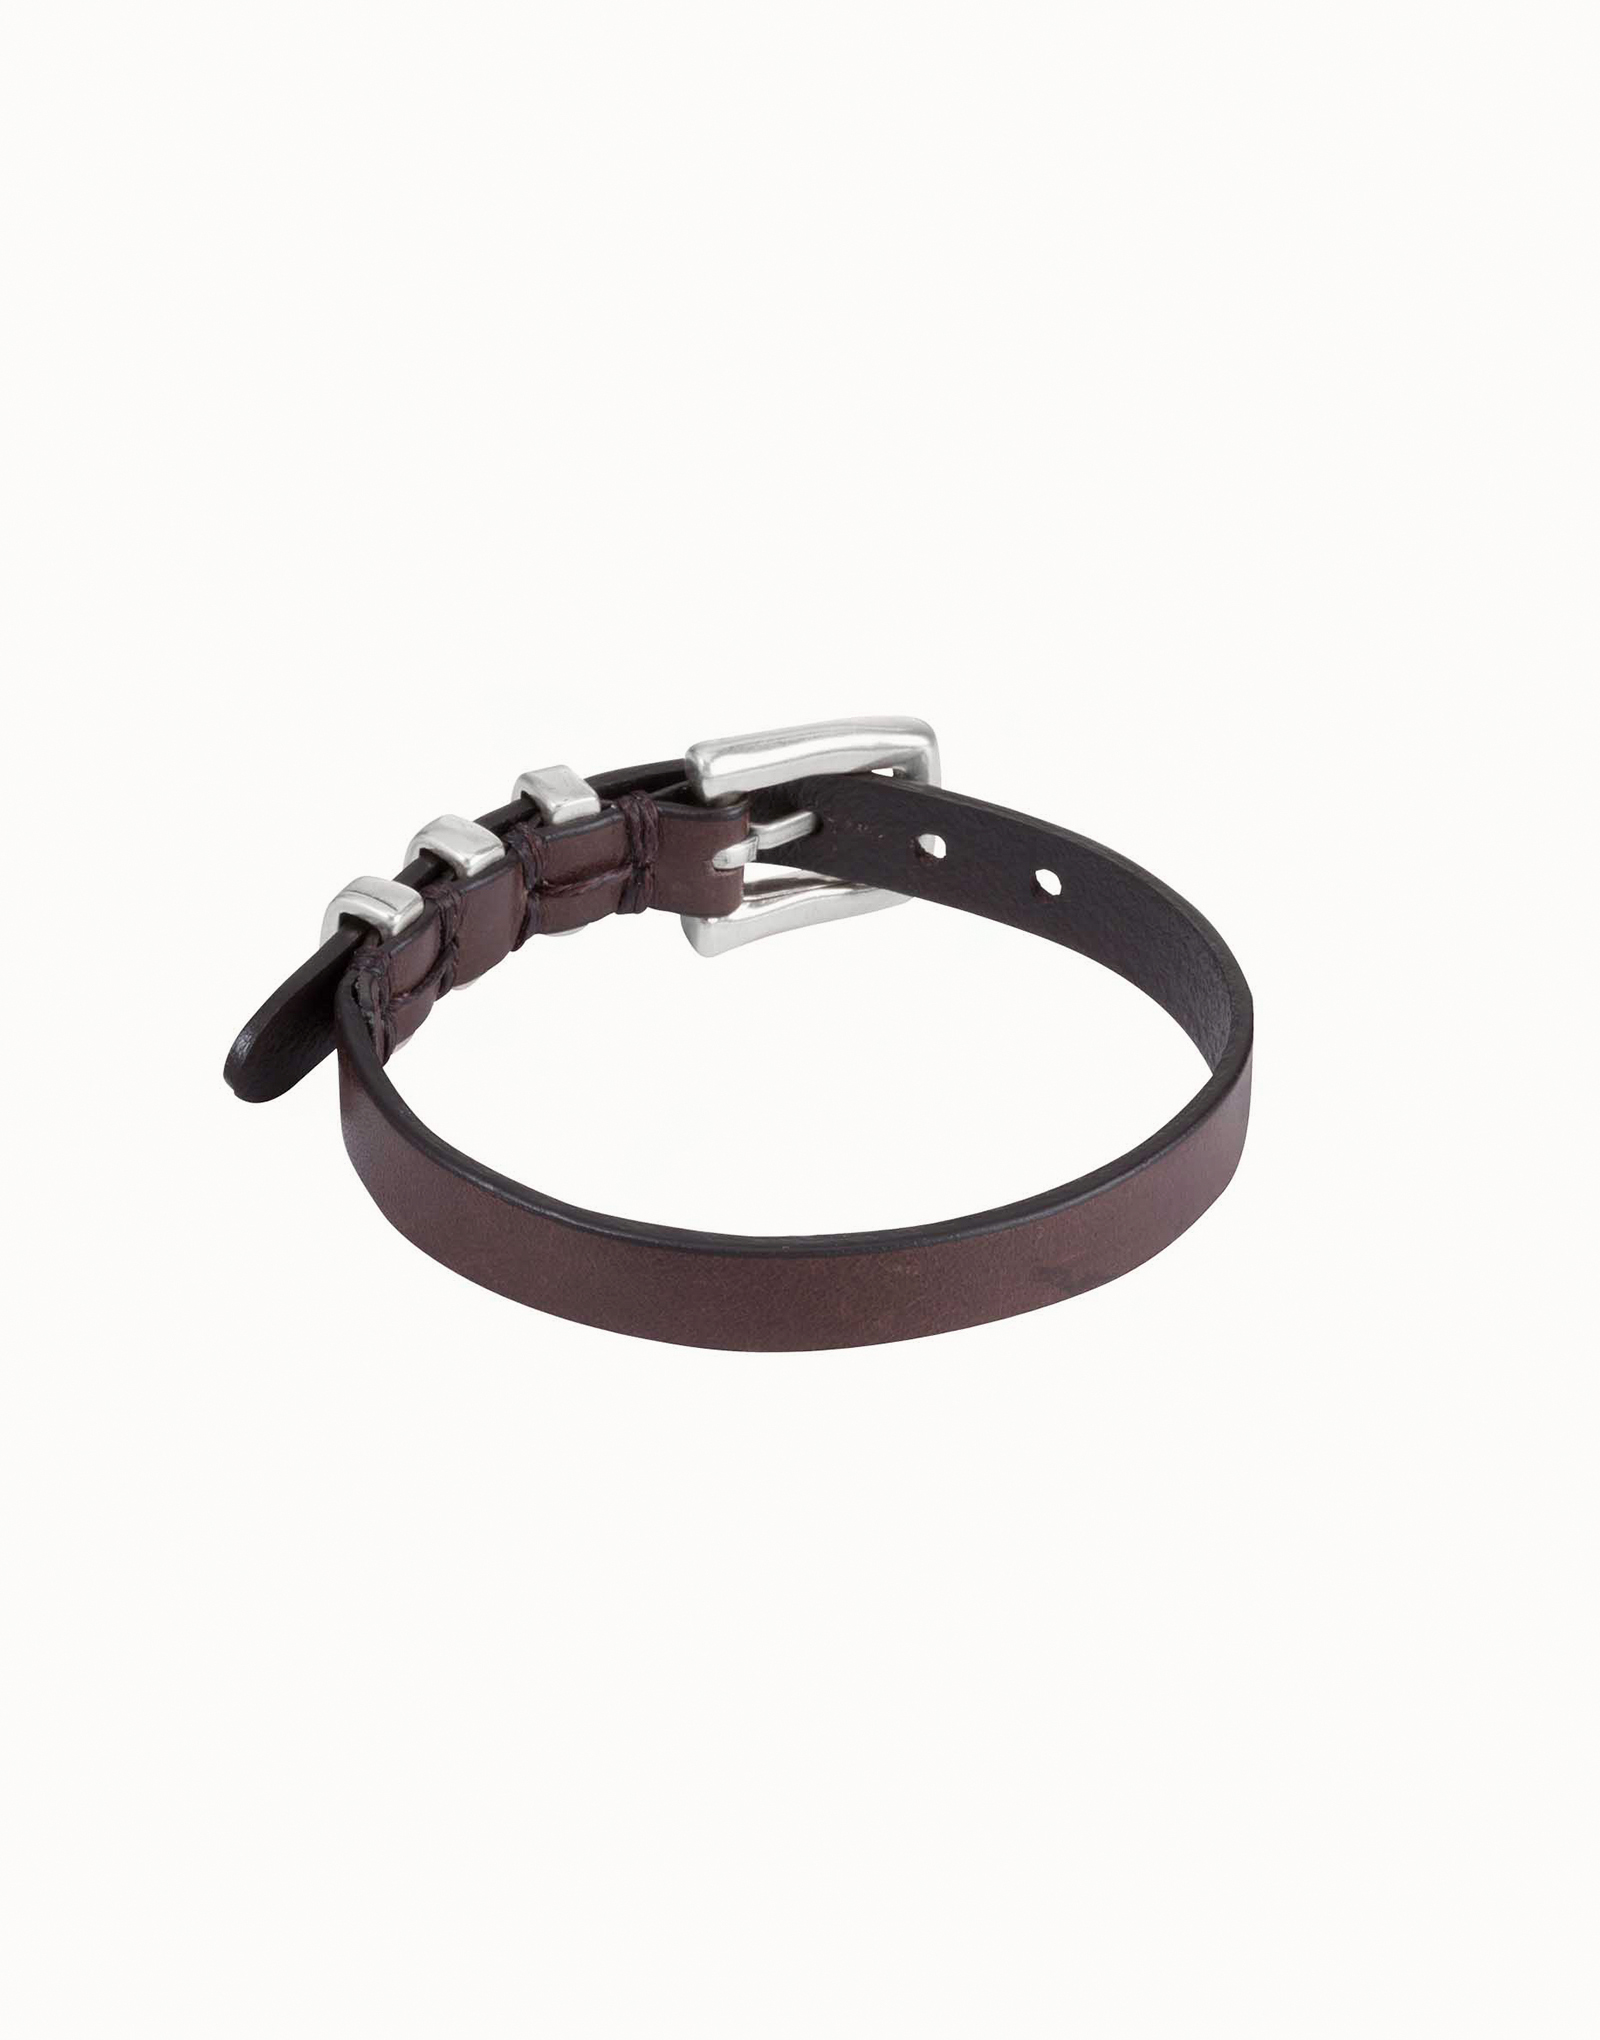 Wrist belt | UNOde50